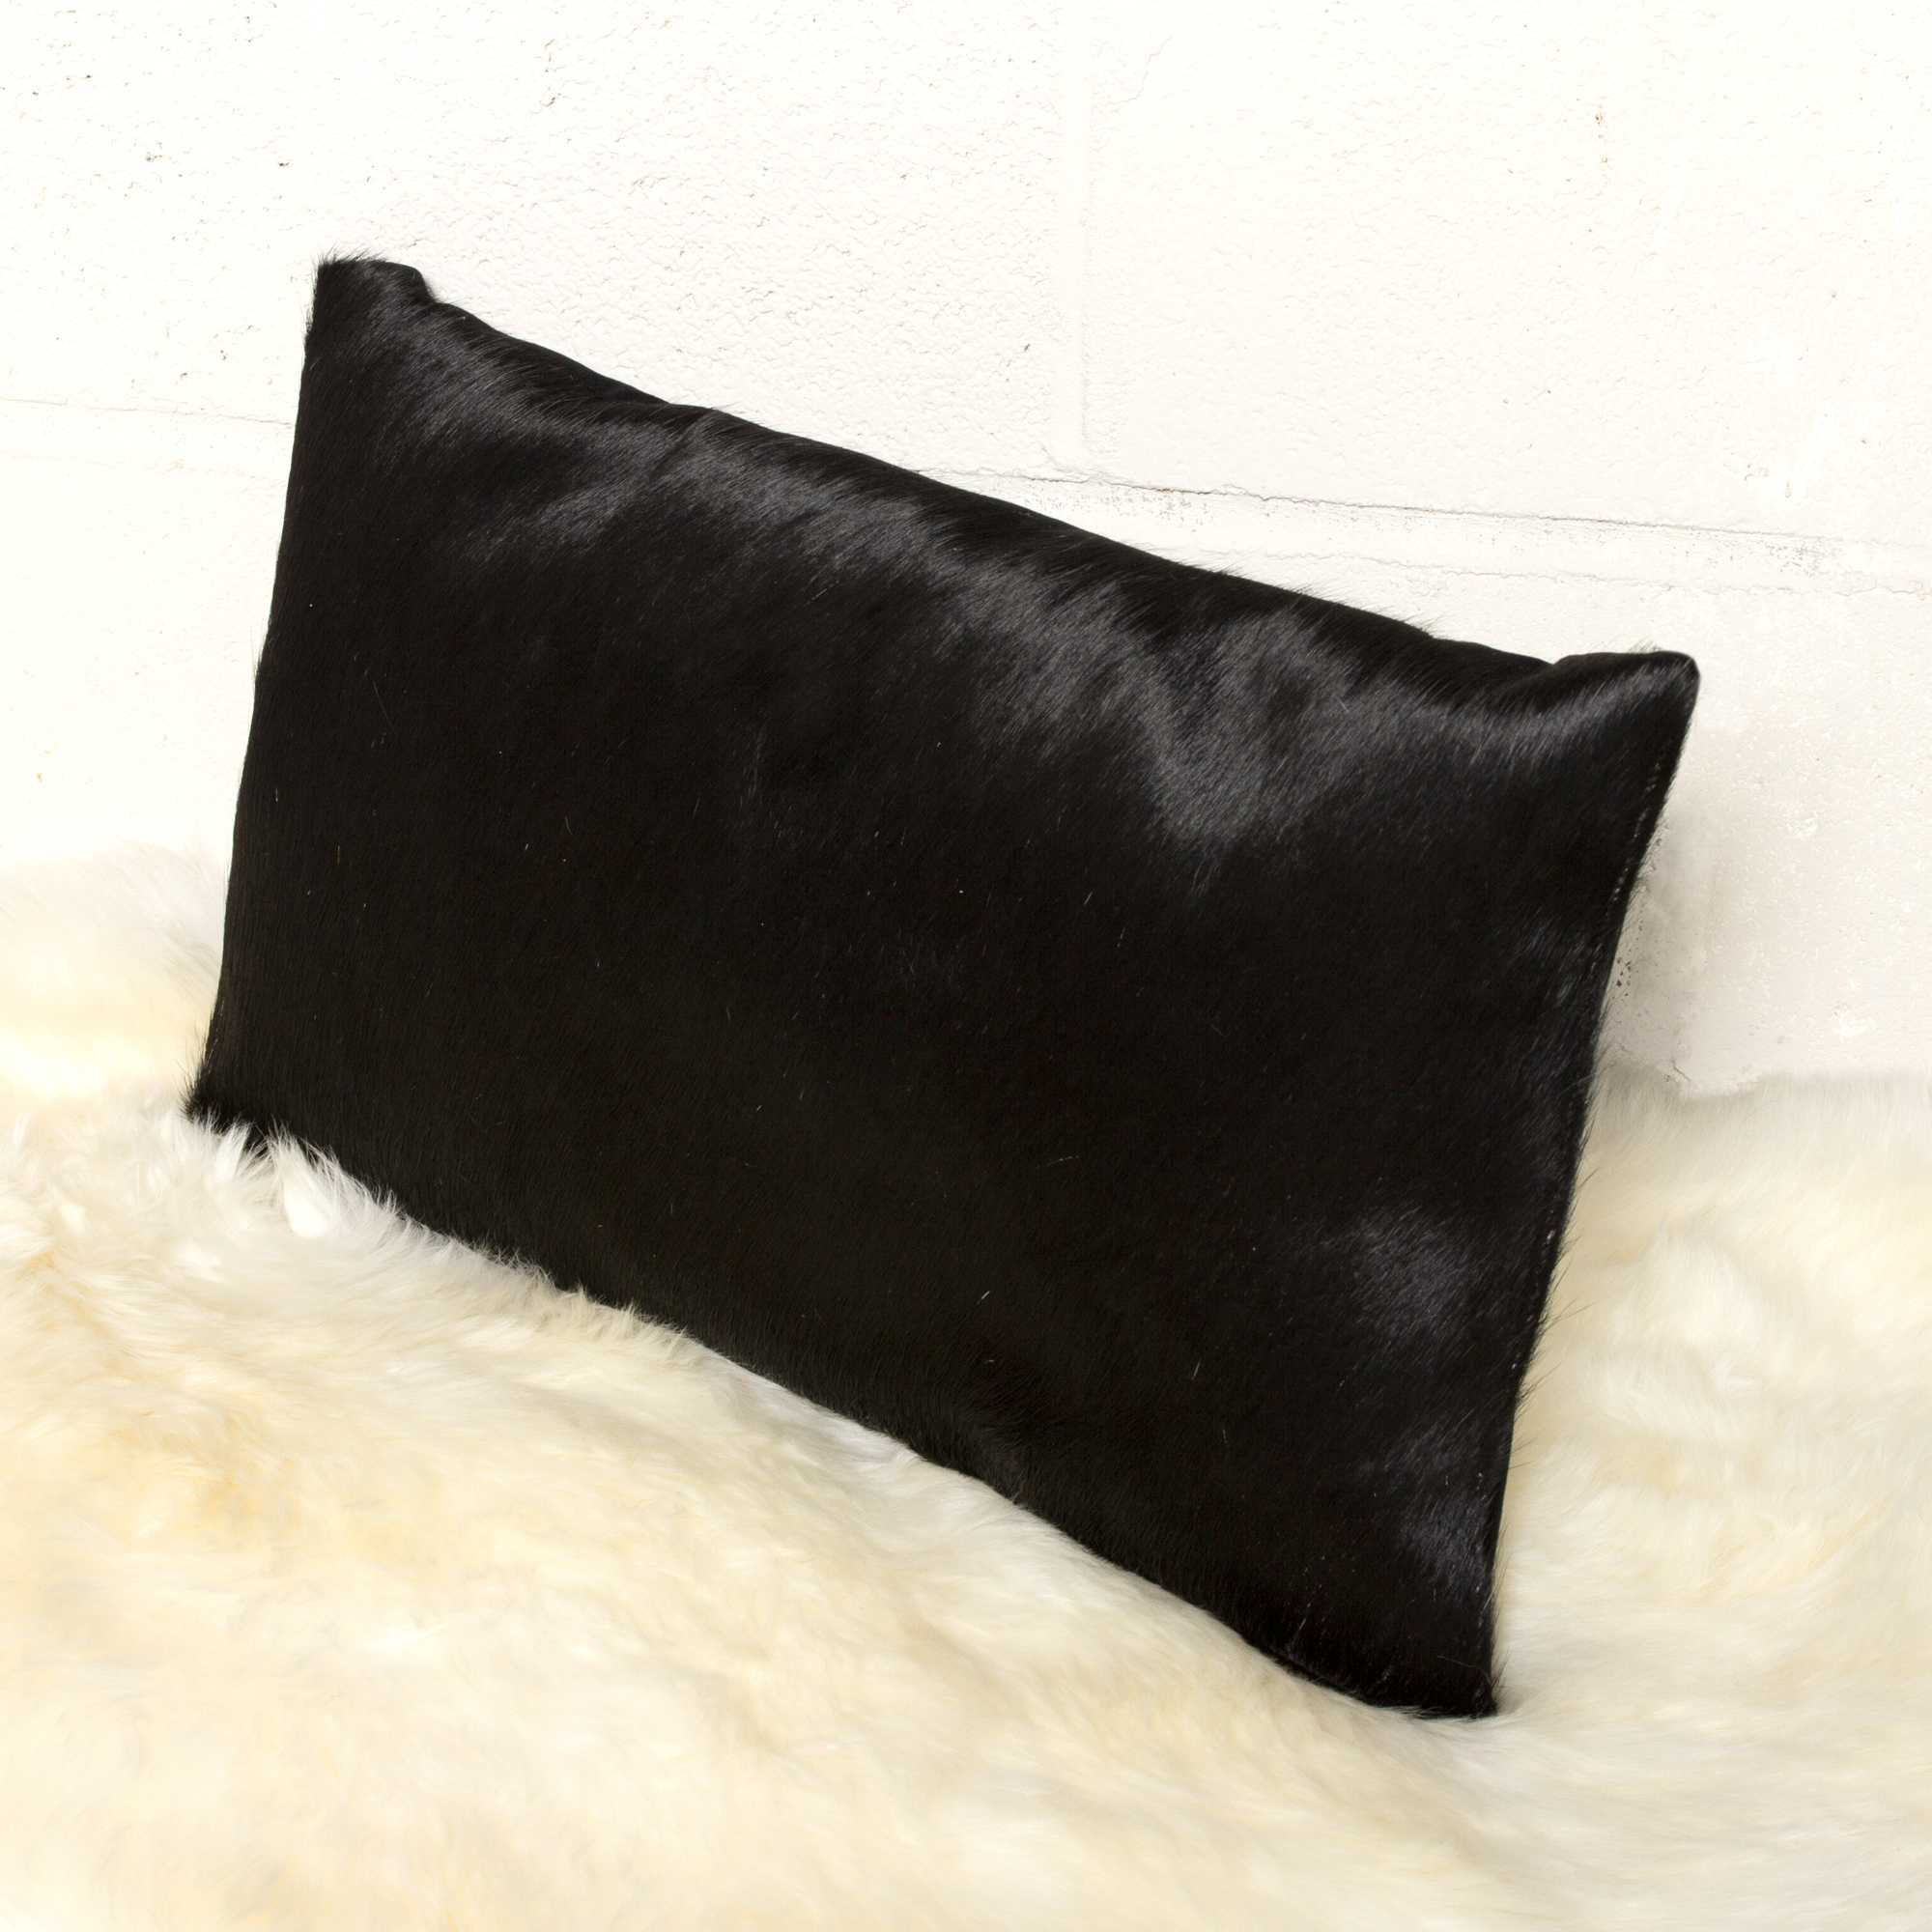 12" x 20" x 5" Black Cowhide - Pillow